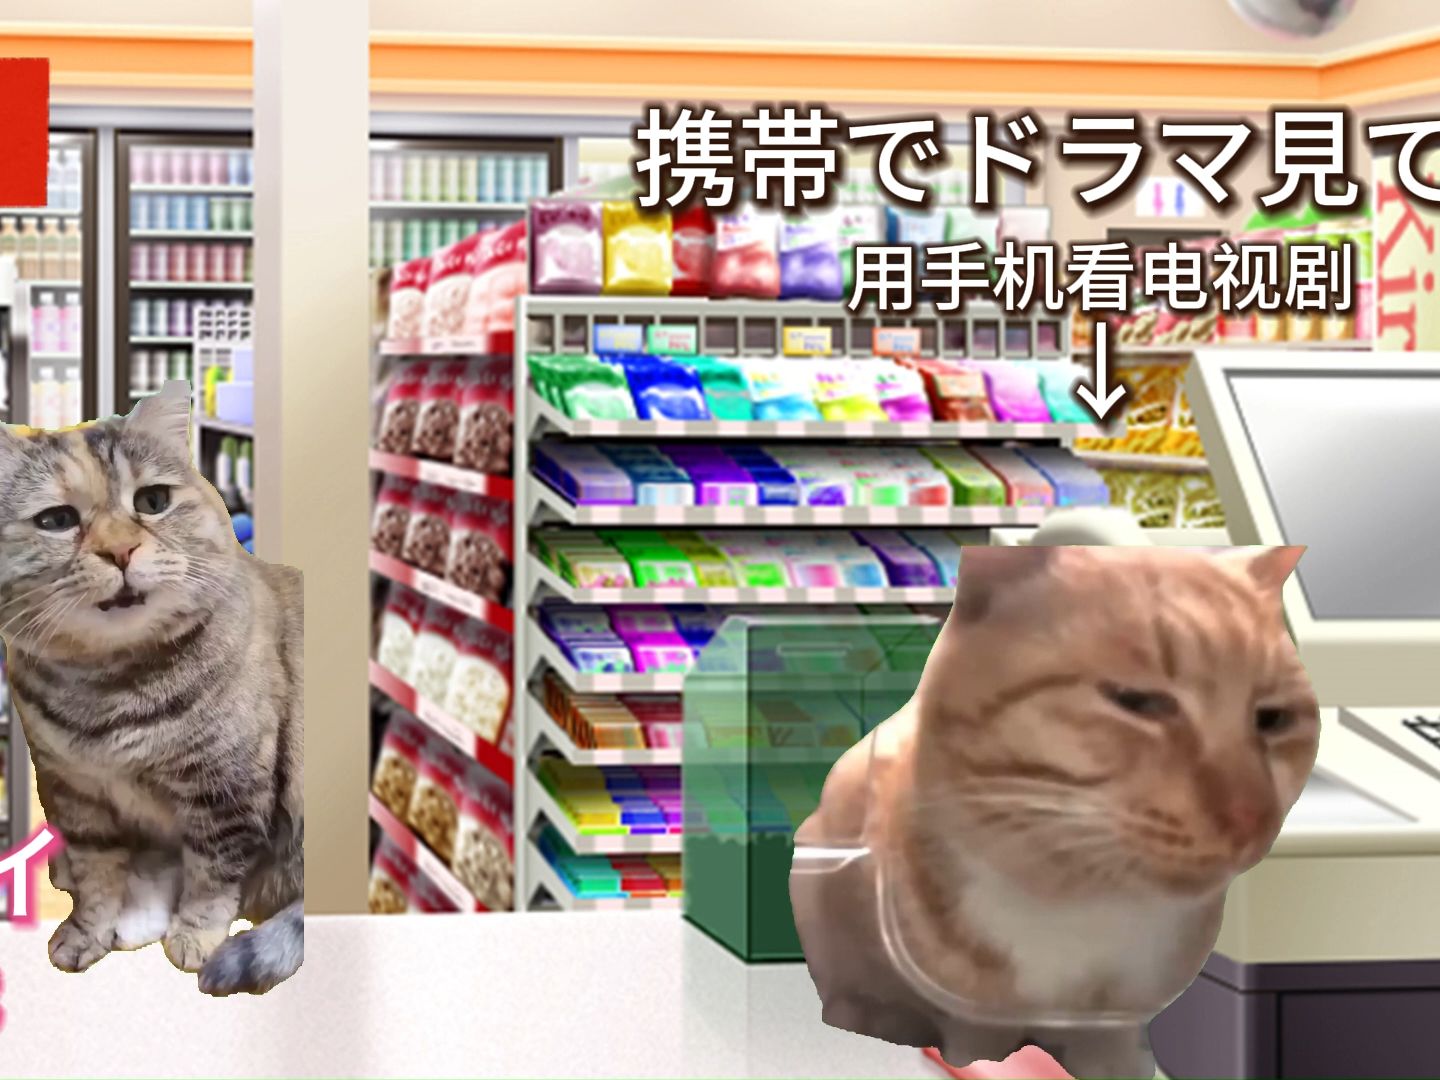 【客人是神篇】日本单亲妈妈去中国后，价值观发生变化的故事(3)【猫meme】